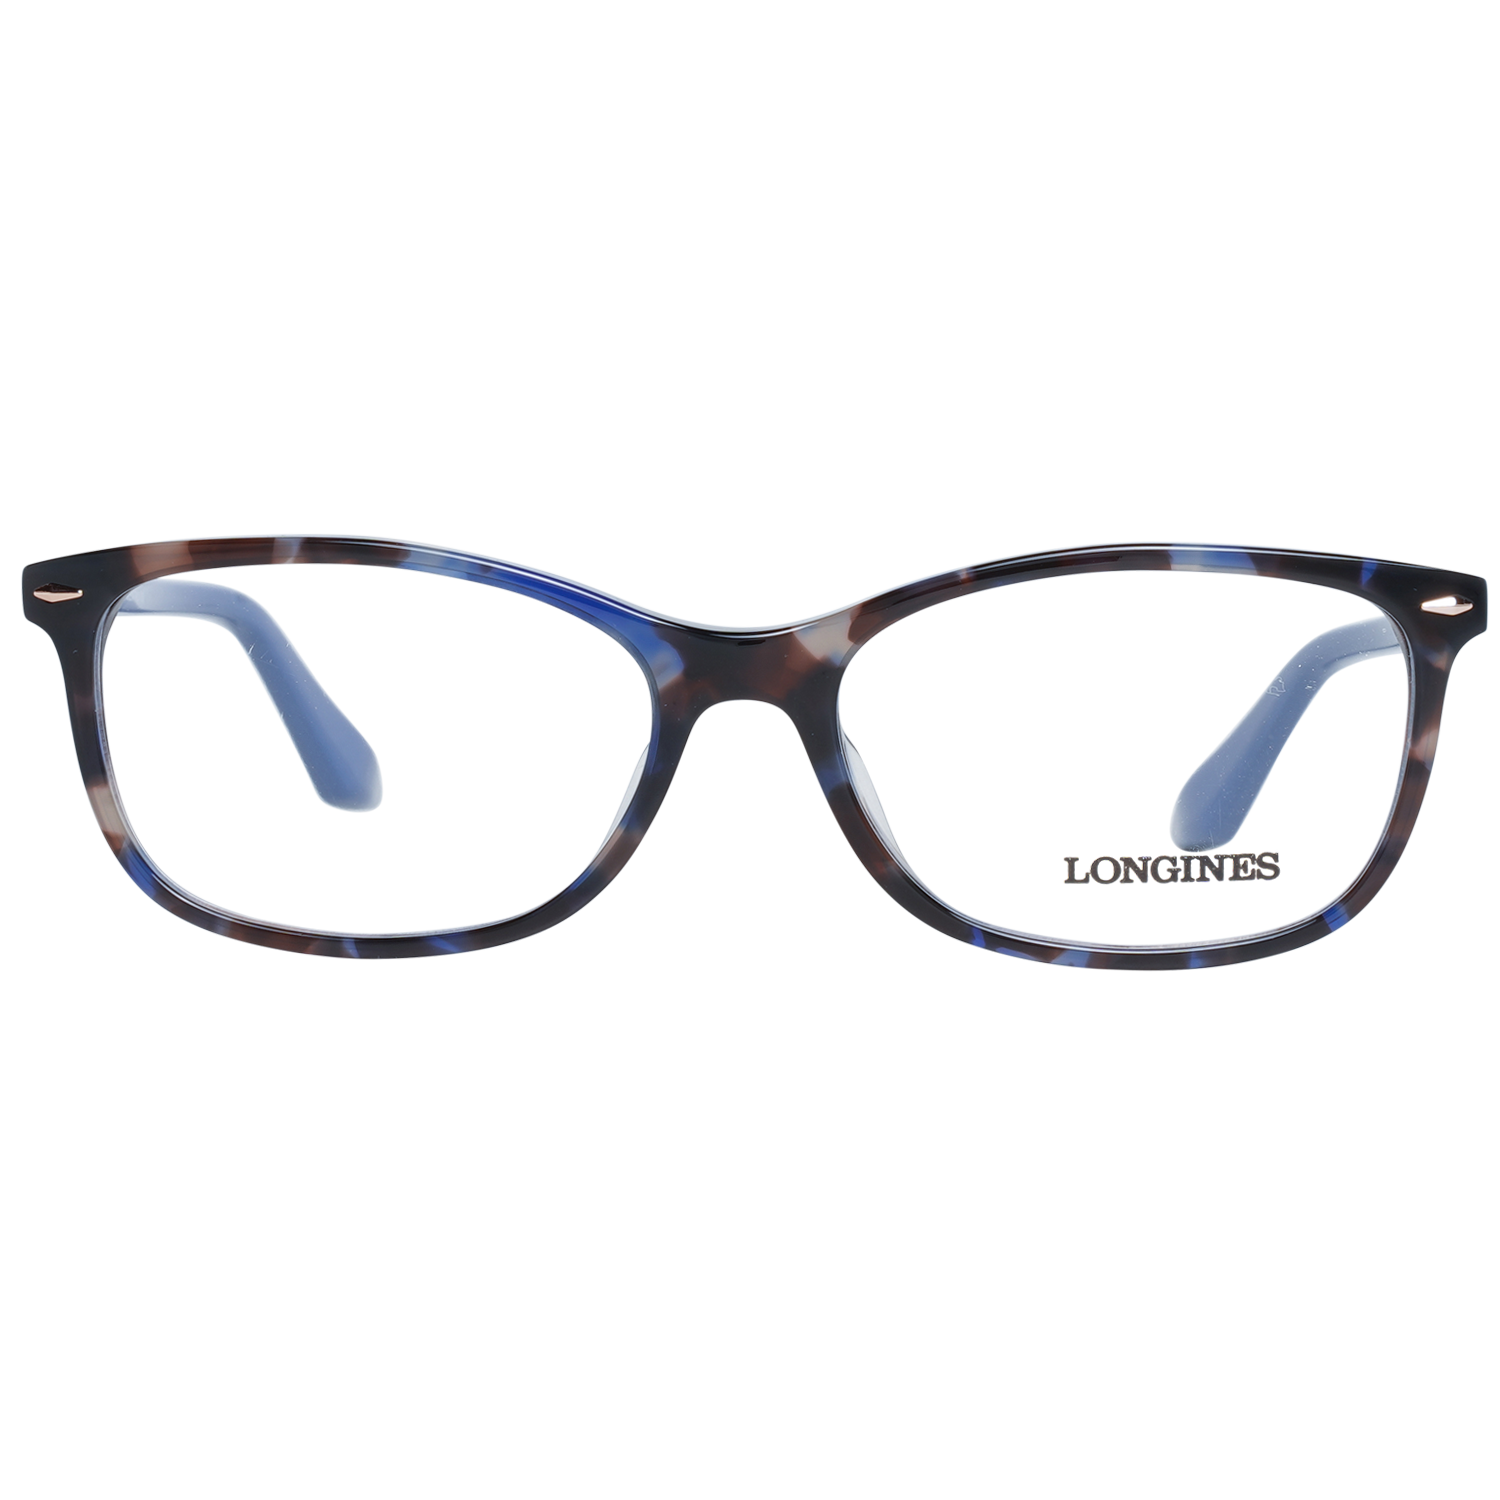 Longines Frames Longines Optical Frame LG5012-H 055 54 Eyeglasses Eyewear UK USA Australia 